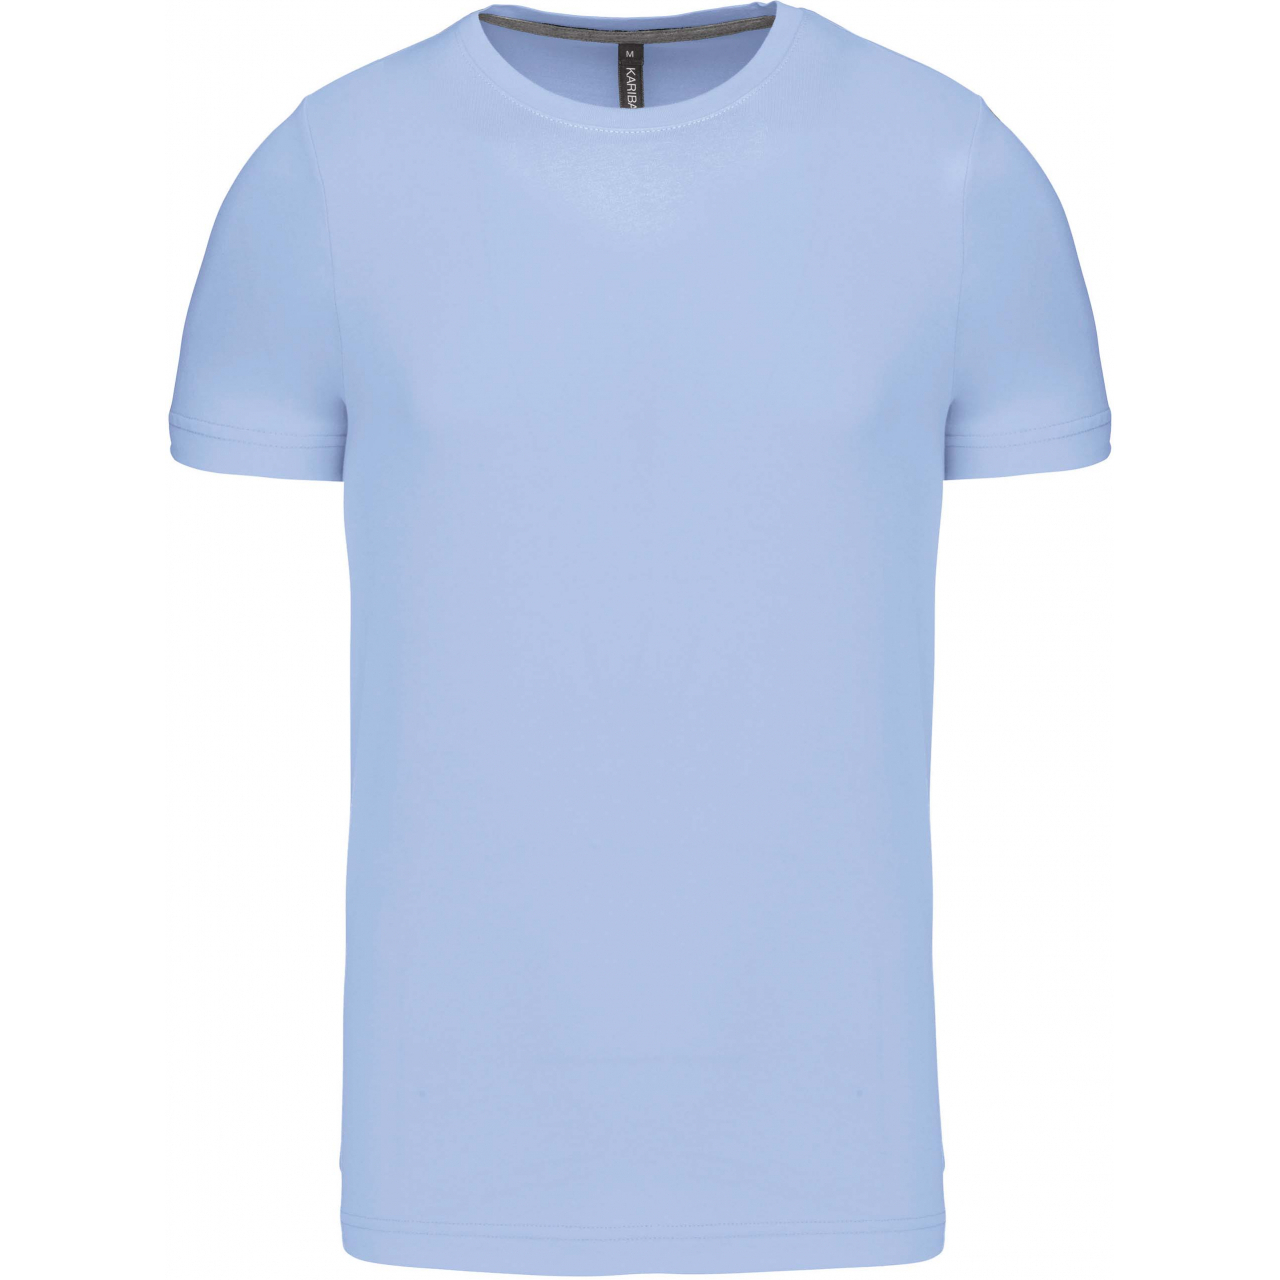 Pánské tričko Kariban krátký rukáv - světle modré, S